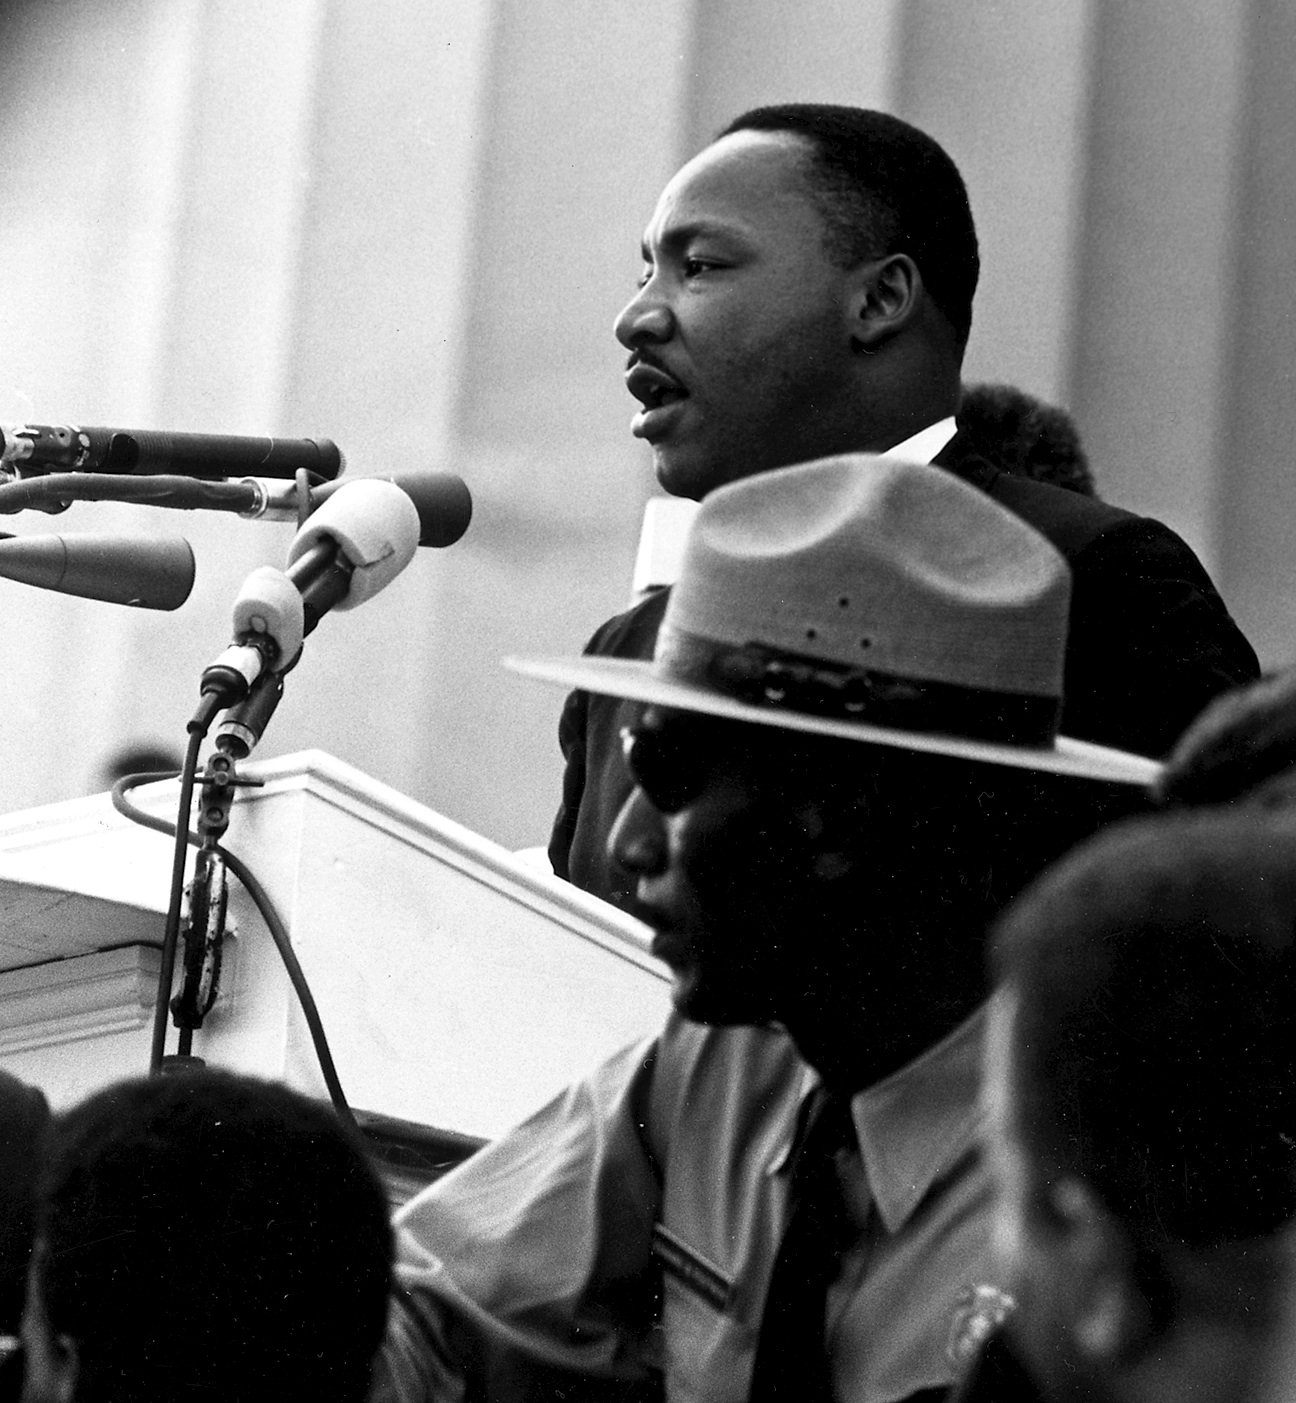 Lliçons de resistència de Martin Luther King, a 50 anys del seu assassinat